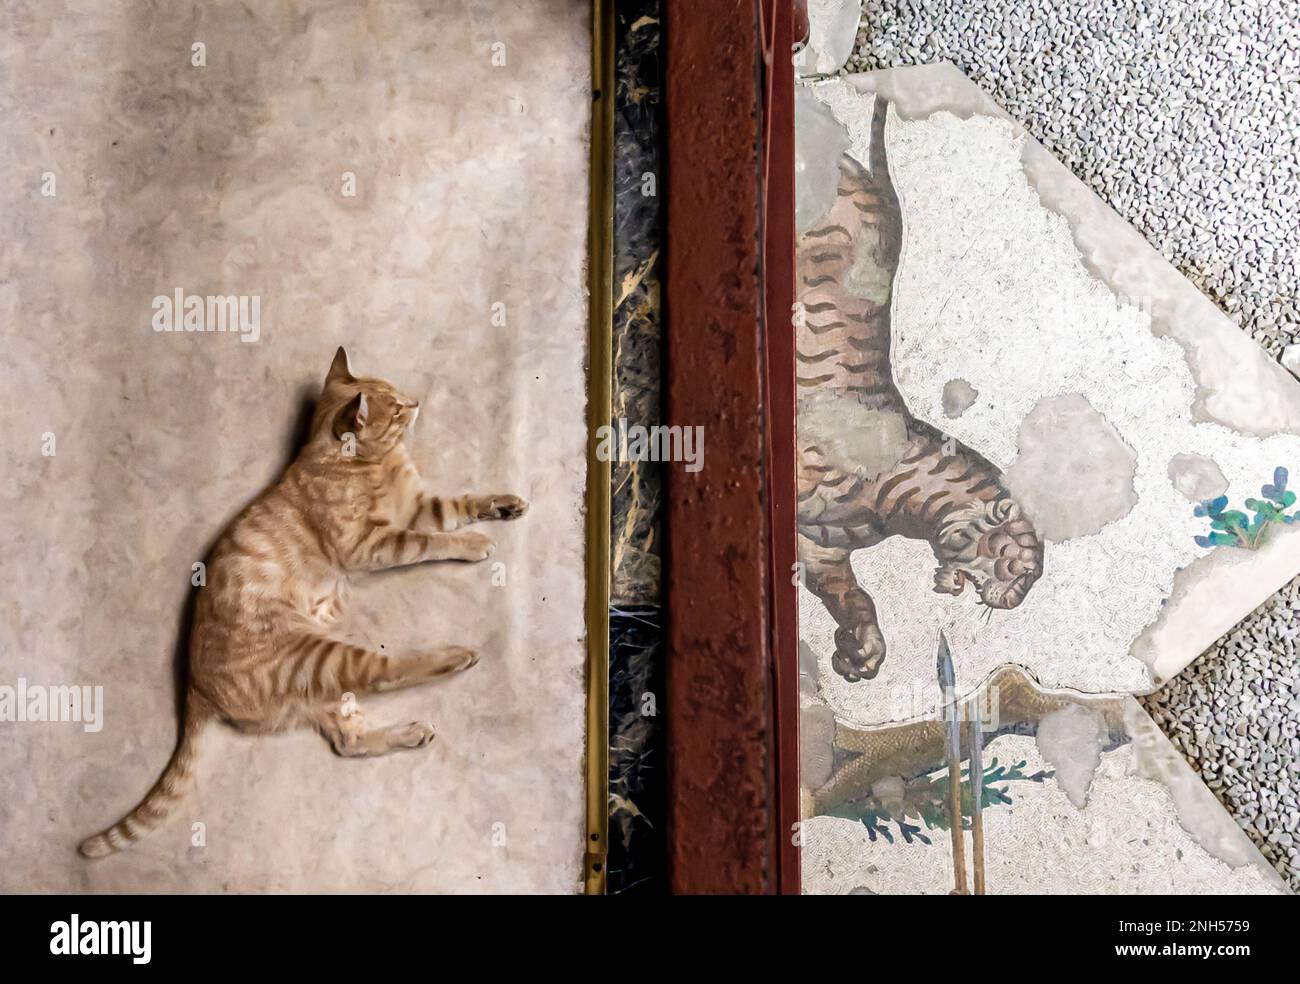 Un chat situé dans le musée de la mosaïque d'Istanbul avec une mosaïque romaine représentant un tigre. Istanbul Turquie Banque D'Images